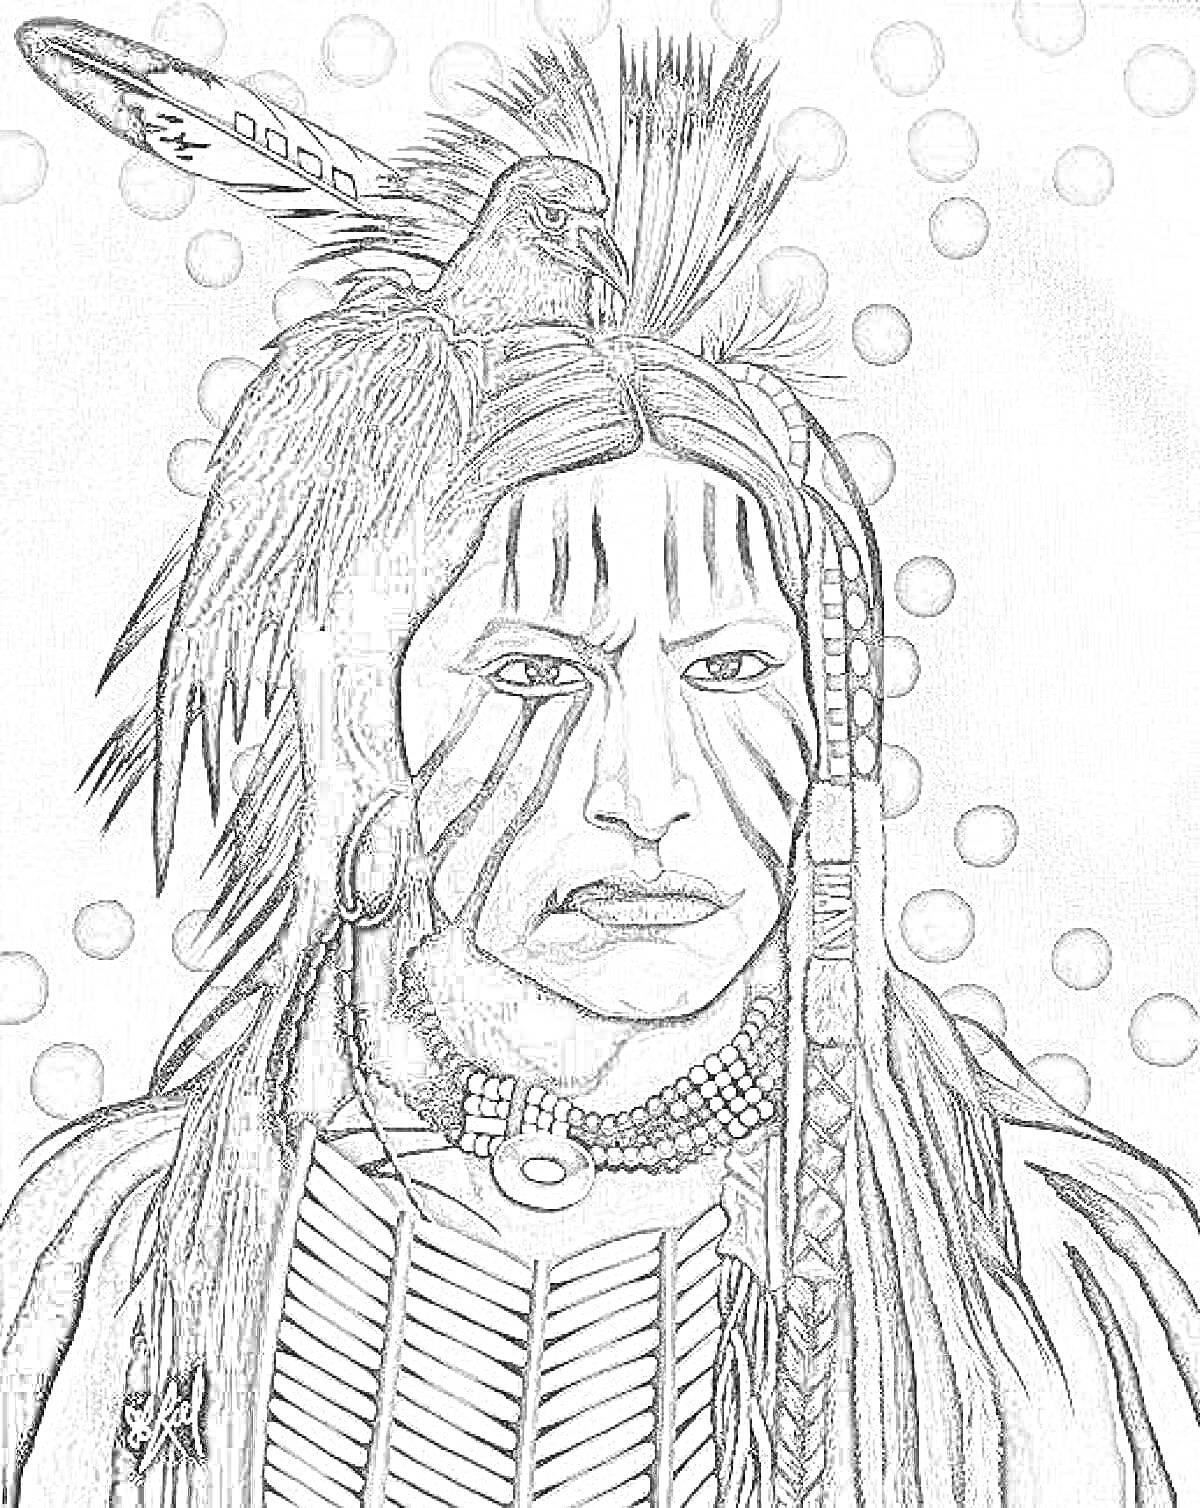 Раскраска Портрет индейца с раскраской на лице, головным убором с перьями и птицей, ожерельем